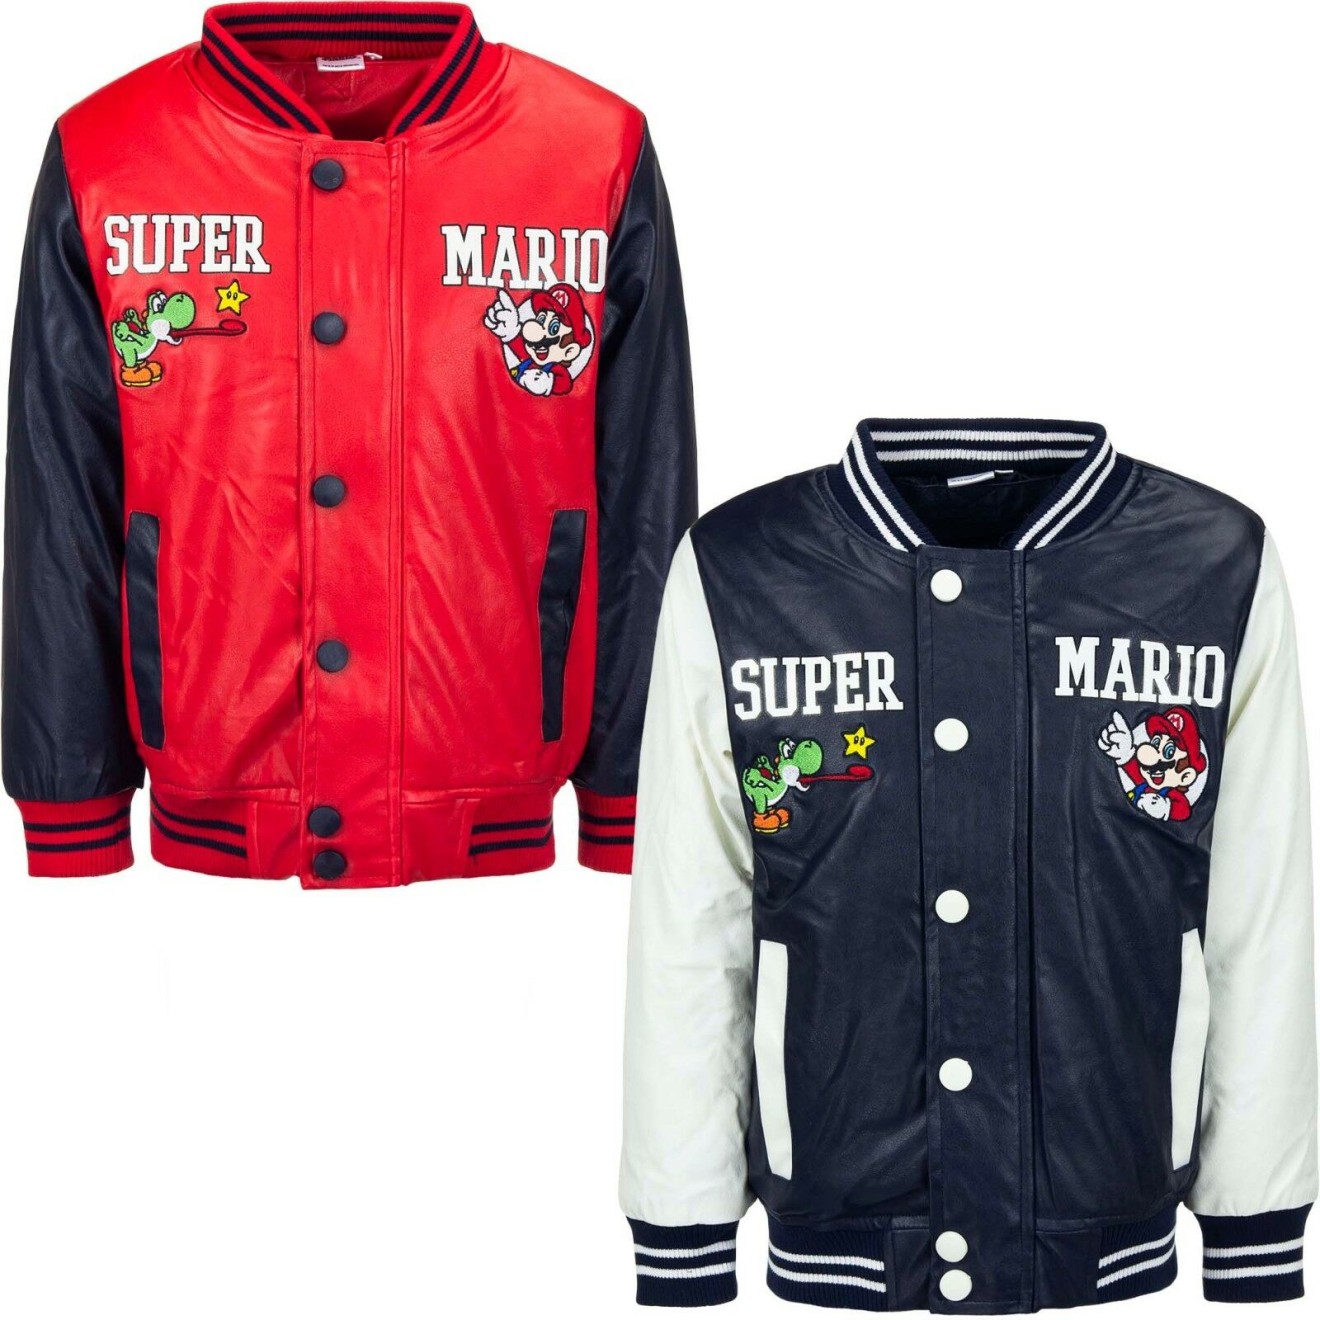 Super Mario - College chaqueta niños